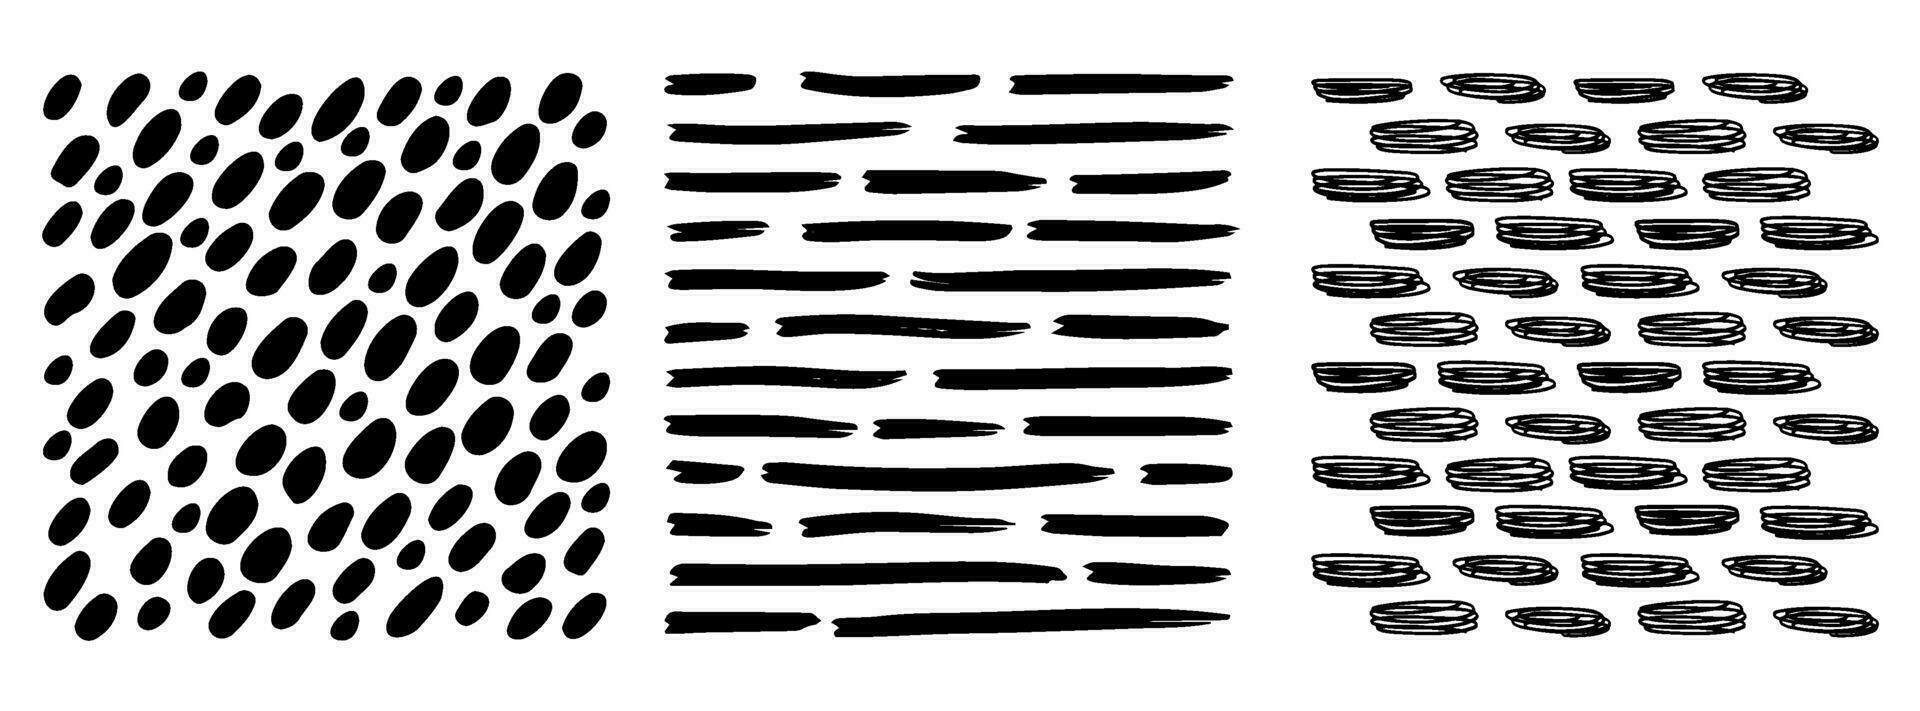 pequeño guión modelo punteado líneas textura. negro y blanco vector eclosión garabatear orgánico formas corto línea guiones cepillo mano dibujado aleatorio golpes Moda sencillo gráfico retro impresión diseño ilustración